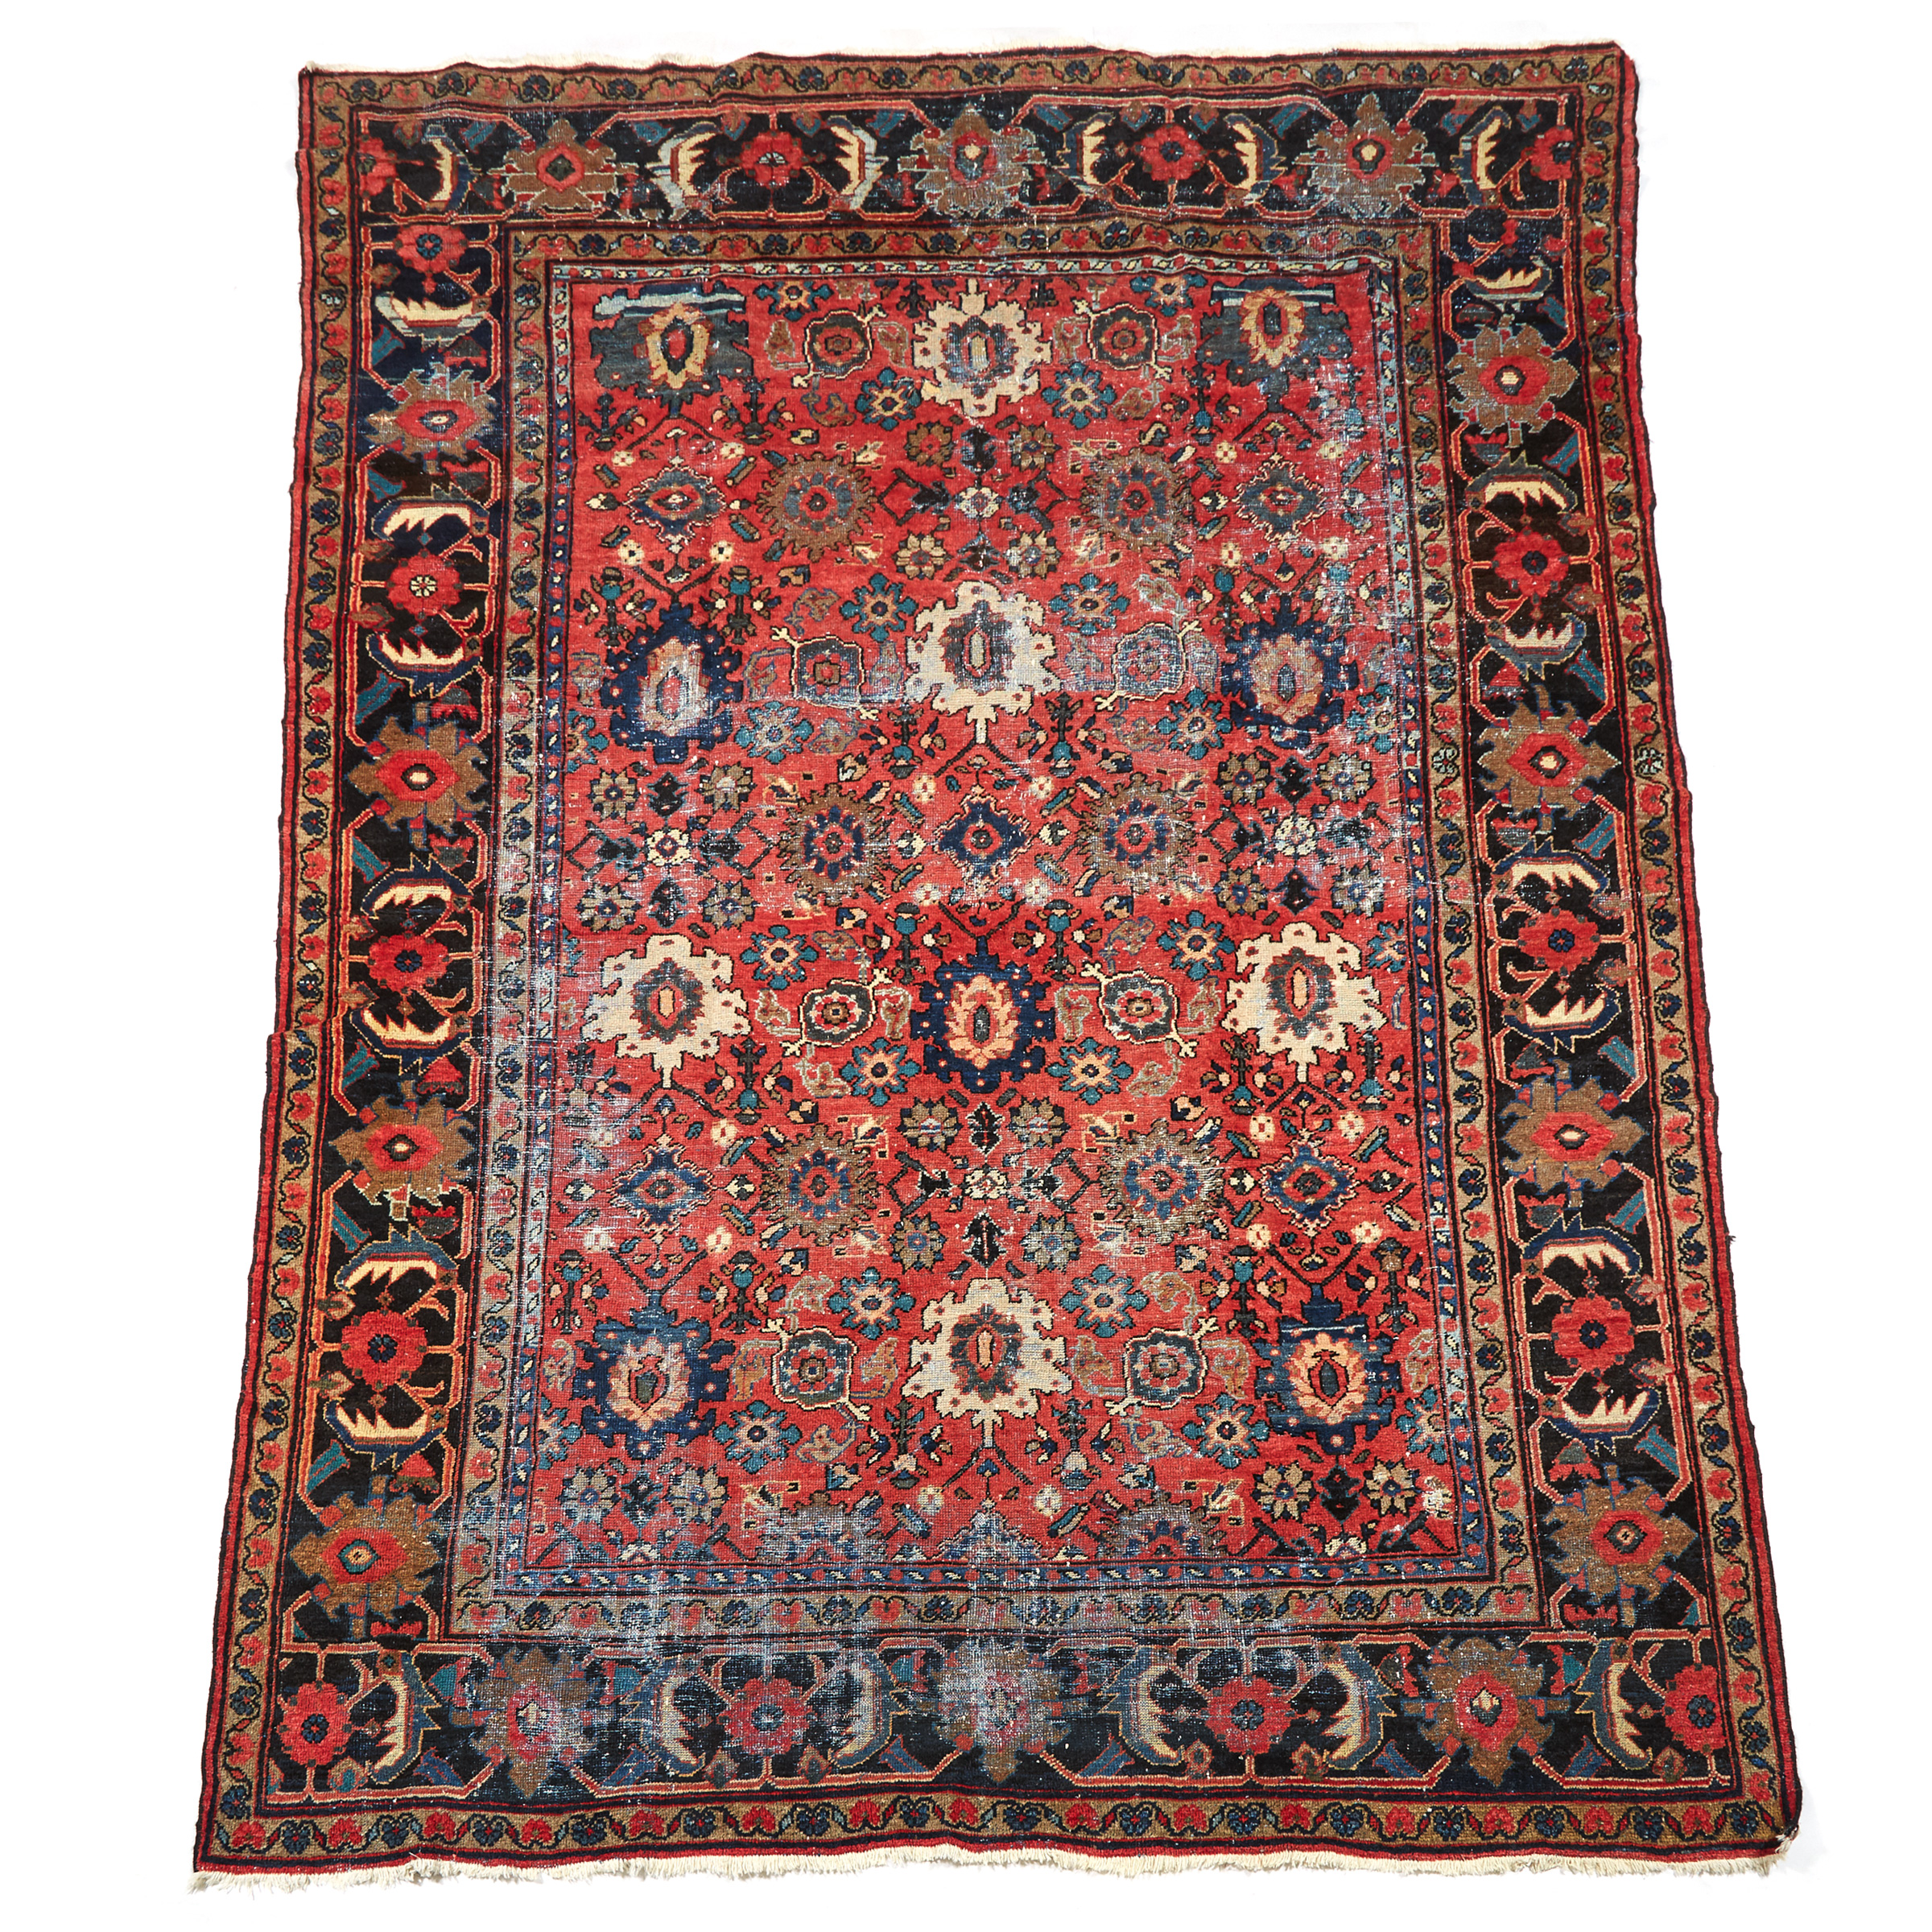 Mahal Carpet, Persian, c. 1930